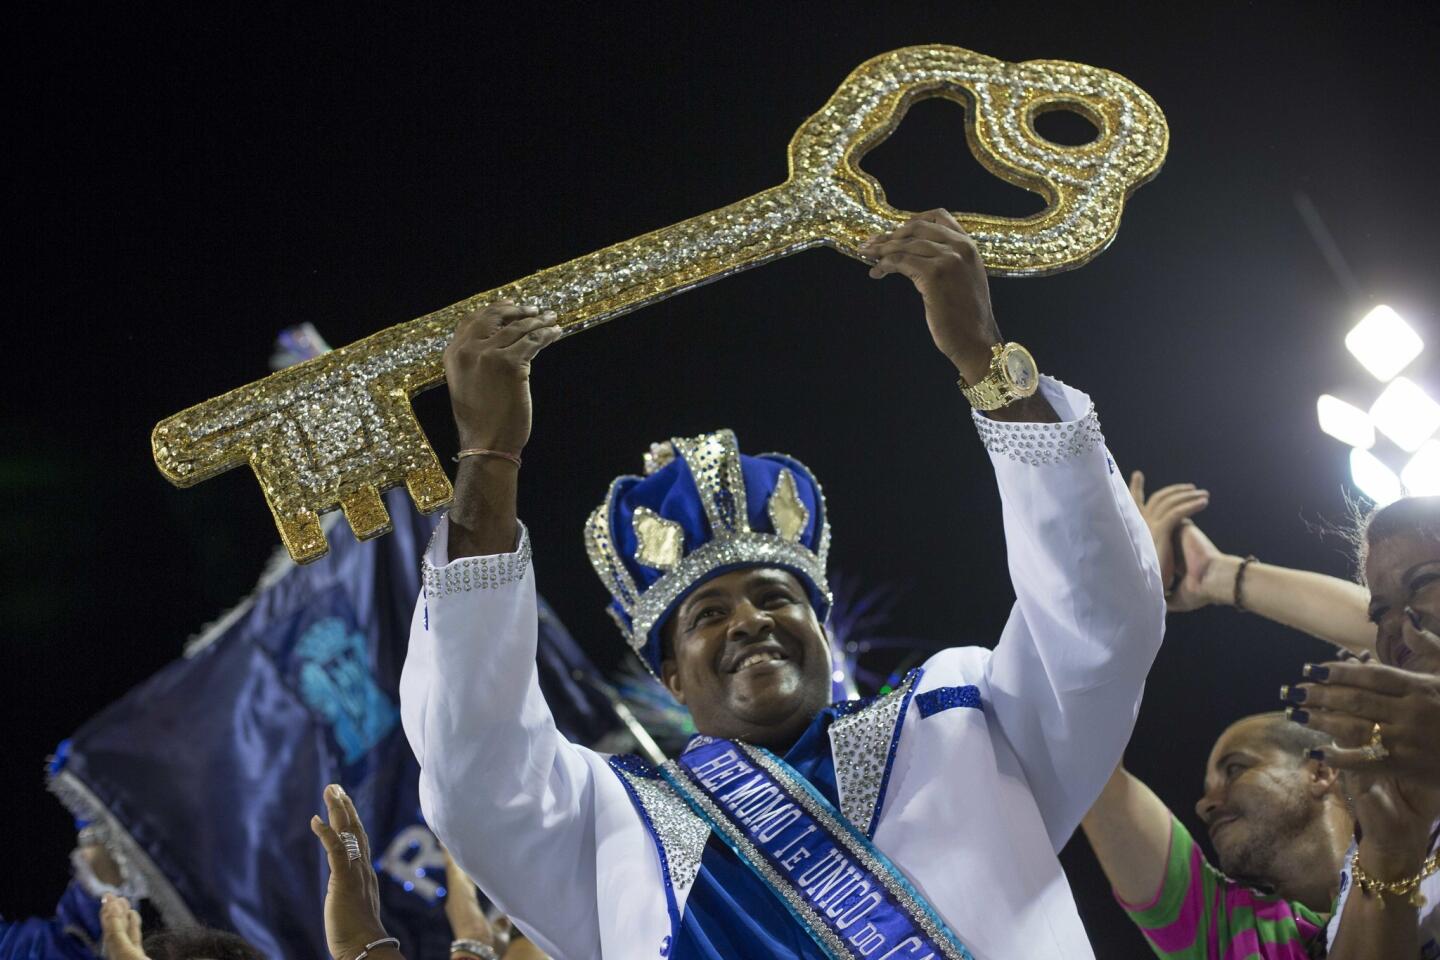 El rey Momo del carnaval, Fabio Damiao dos Santos Antunes, sostiene la llave de la ciudad en una ceremonia para marcar el inicio oficial del carnaval en Río de Janeiro, Brasil, el viernes 24 de febrero de 2017. (AP Foto/Mauro Pimentel)